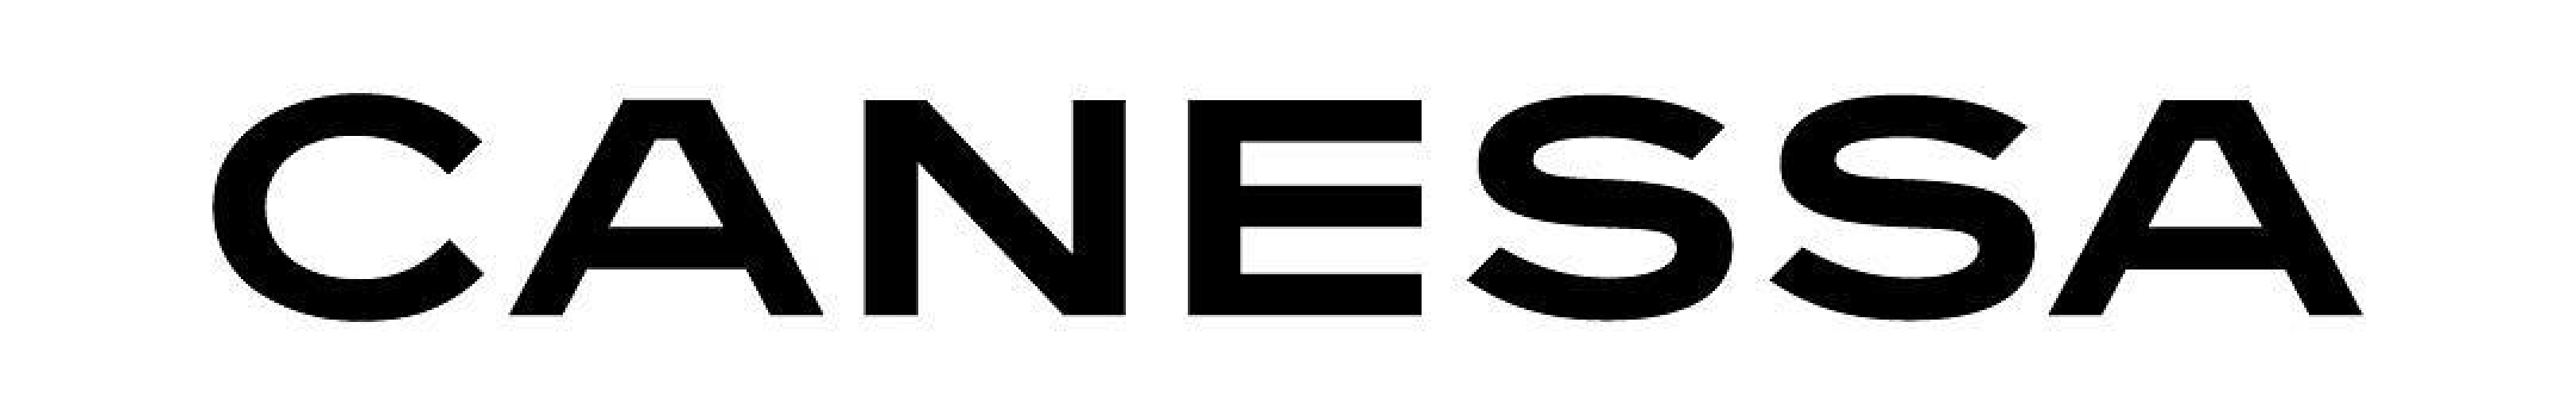 Canessa Brand Logo